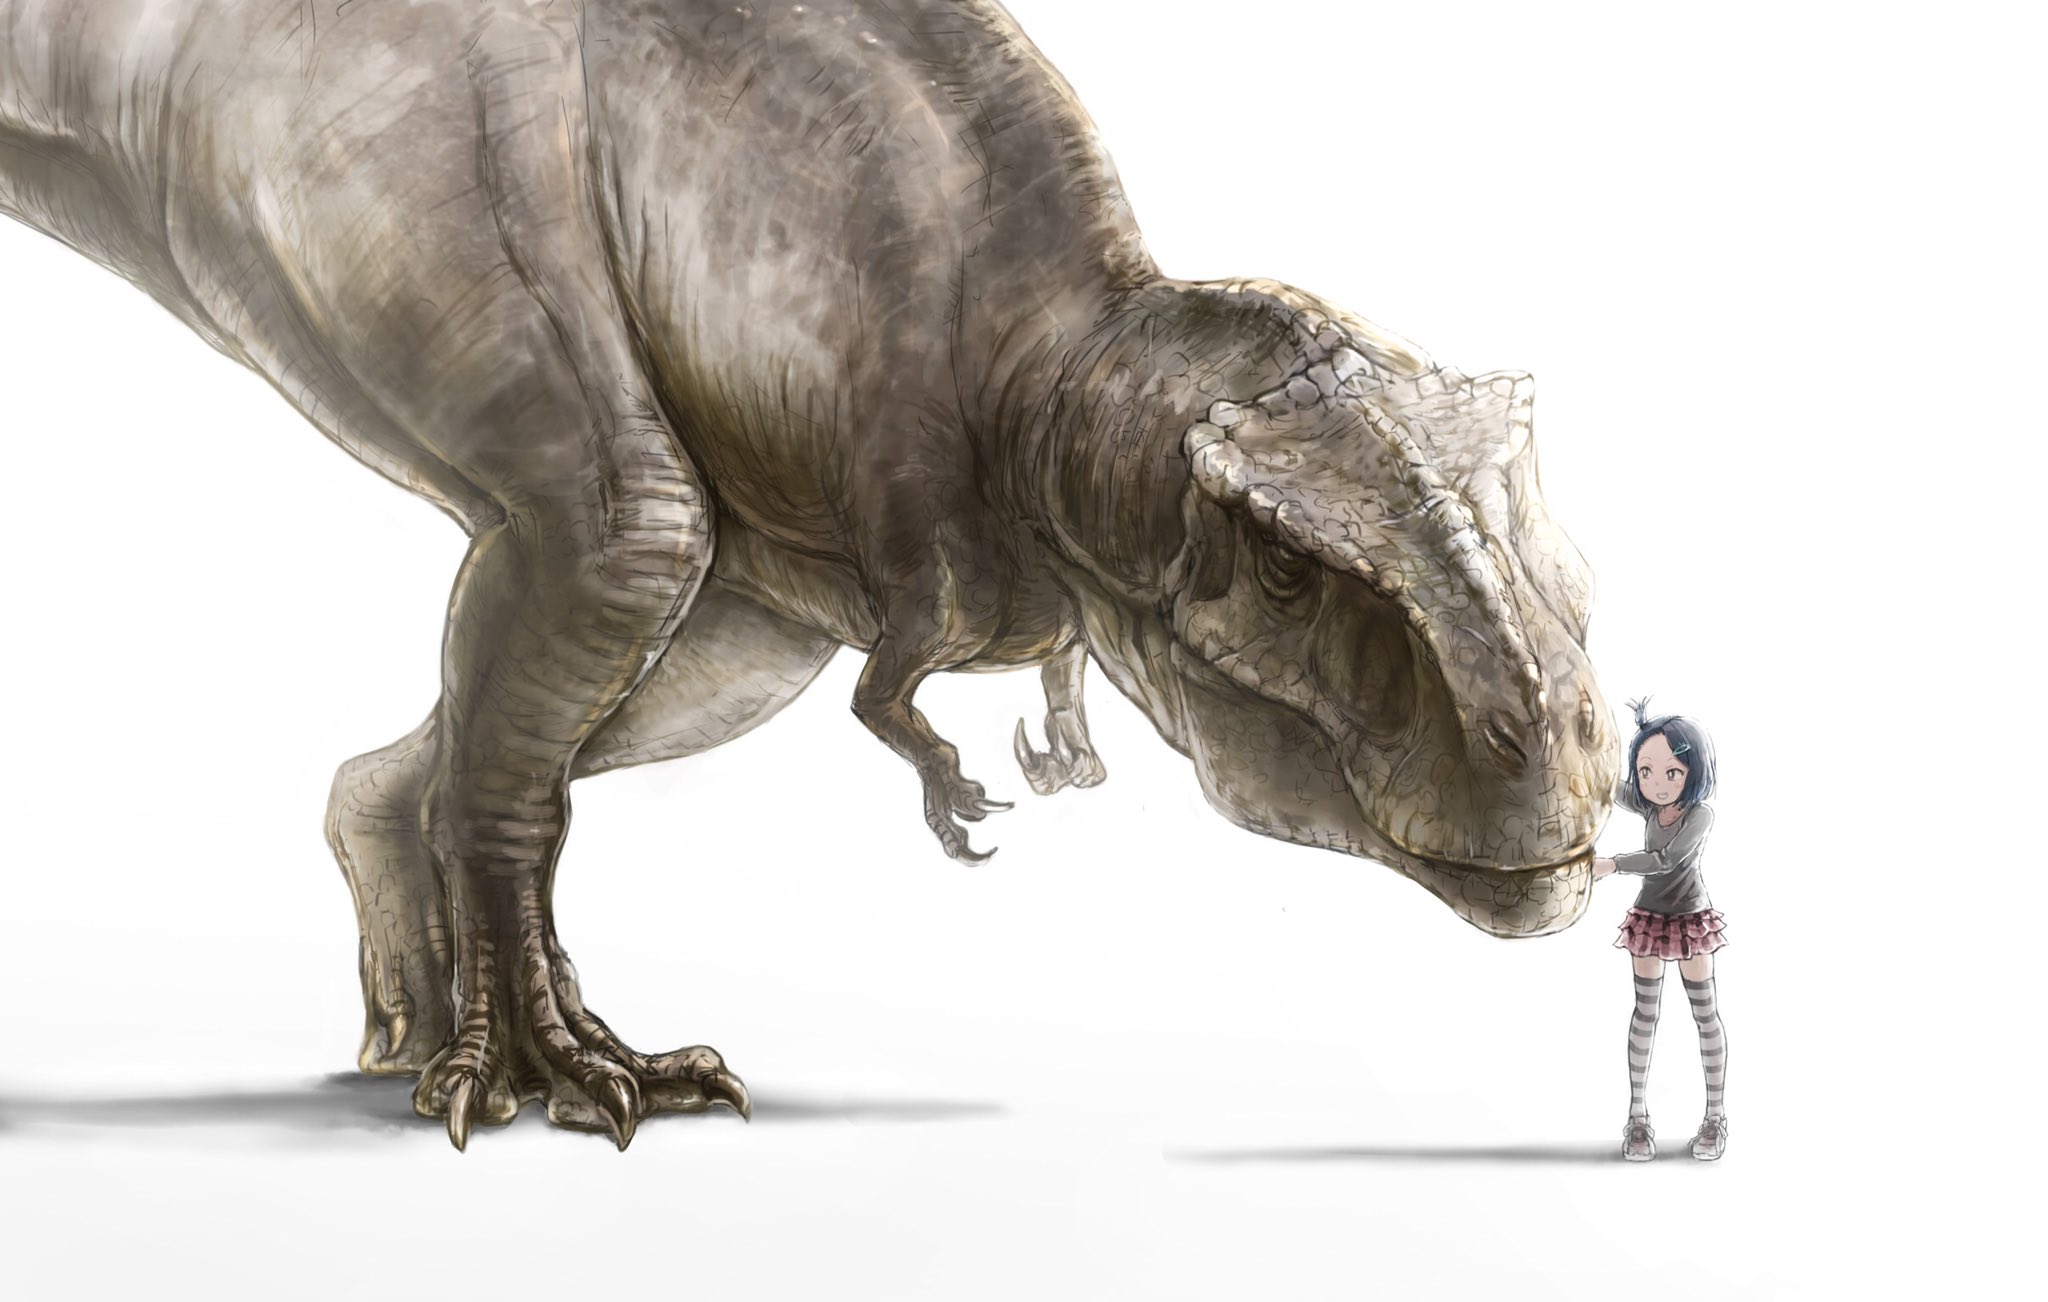 ありヒノコ イラスト同盟活動 ティラノサウルスと女の子描きました ティラノは今までで一番いい感じに描けたと思う T Co Zcdnlyhfjf Twitter